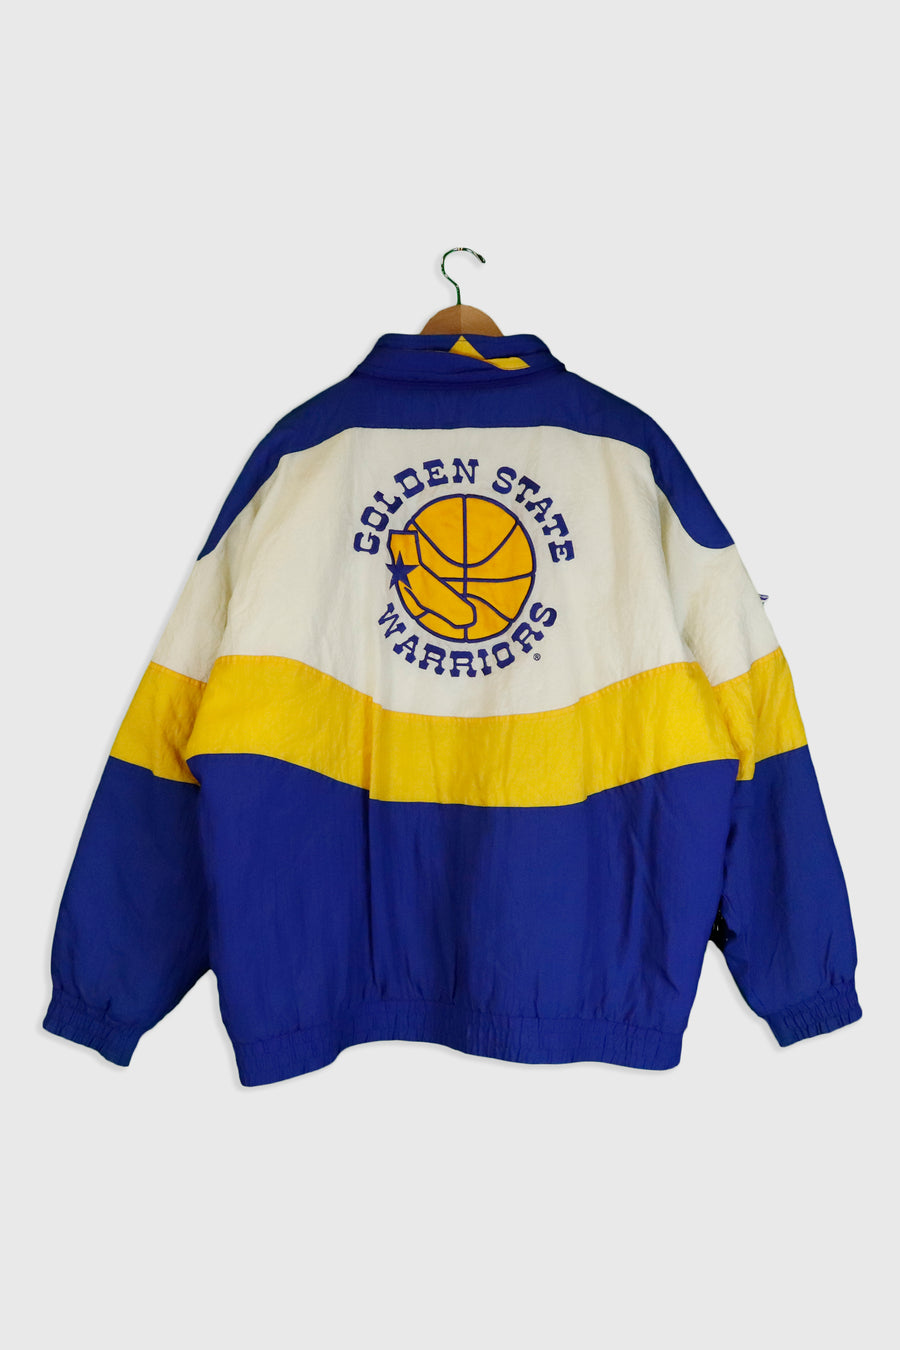 Vintage NBA Apex One Golden State Warriors Jacket Sz XL